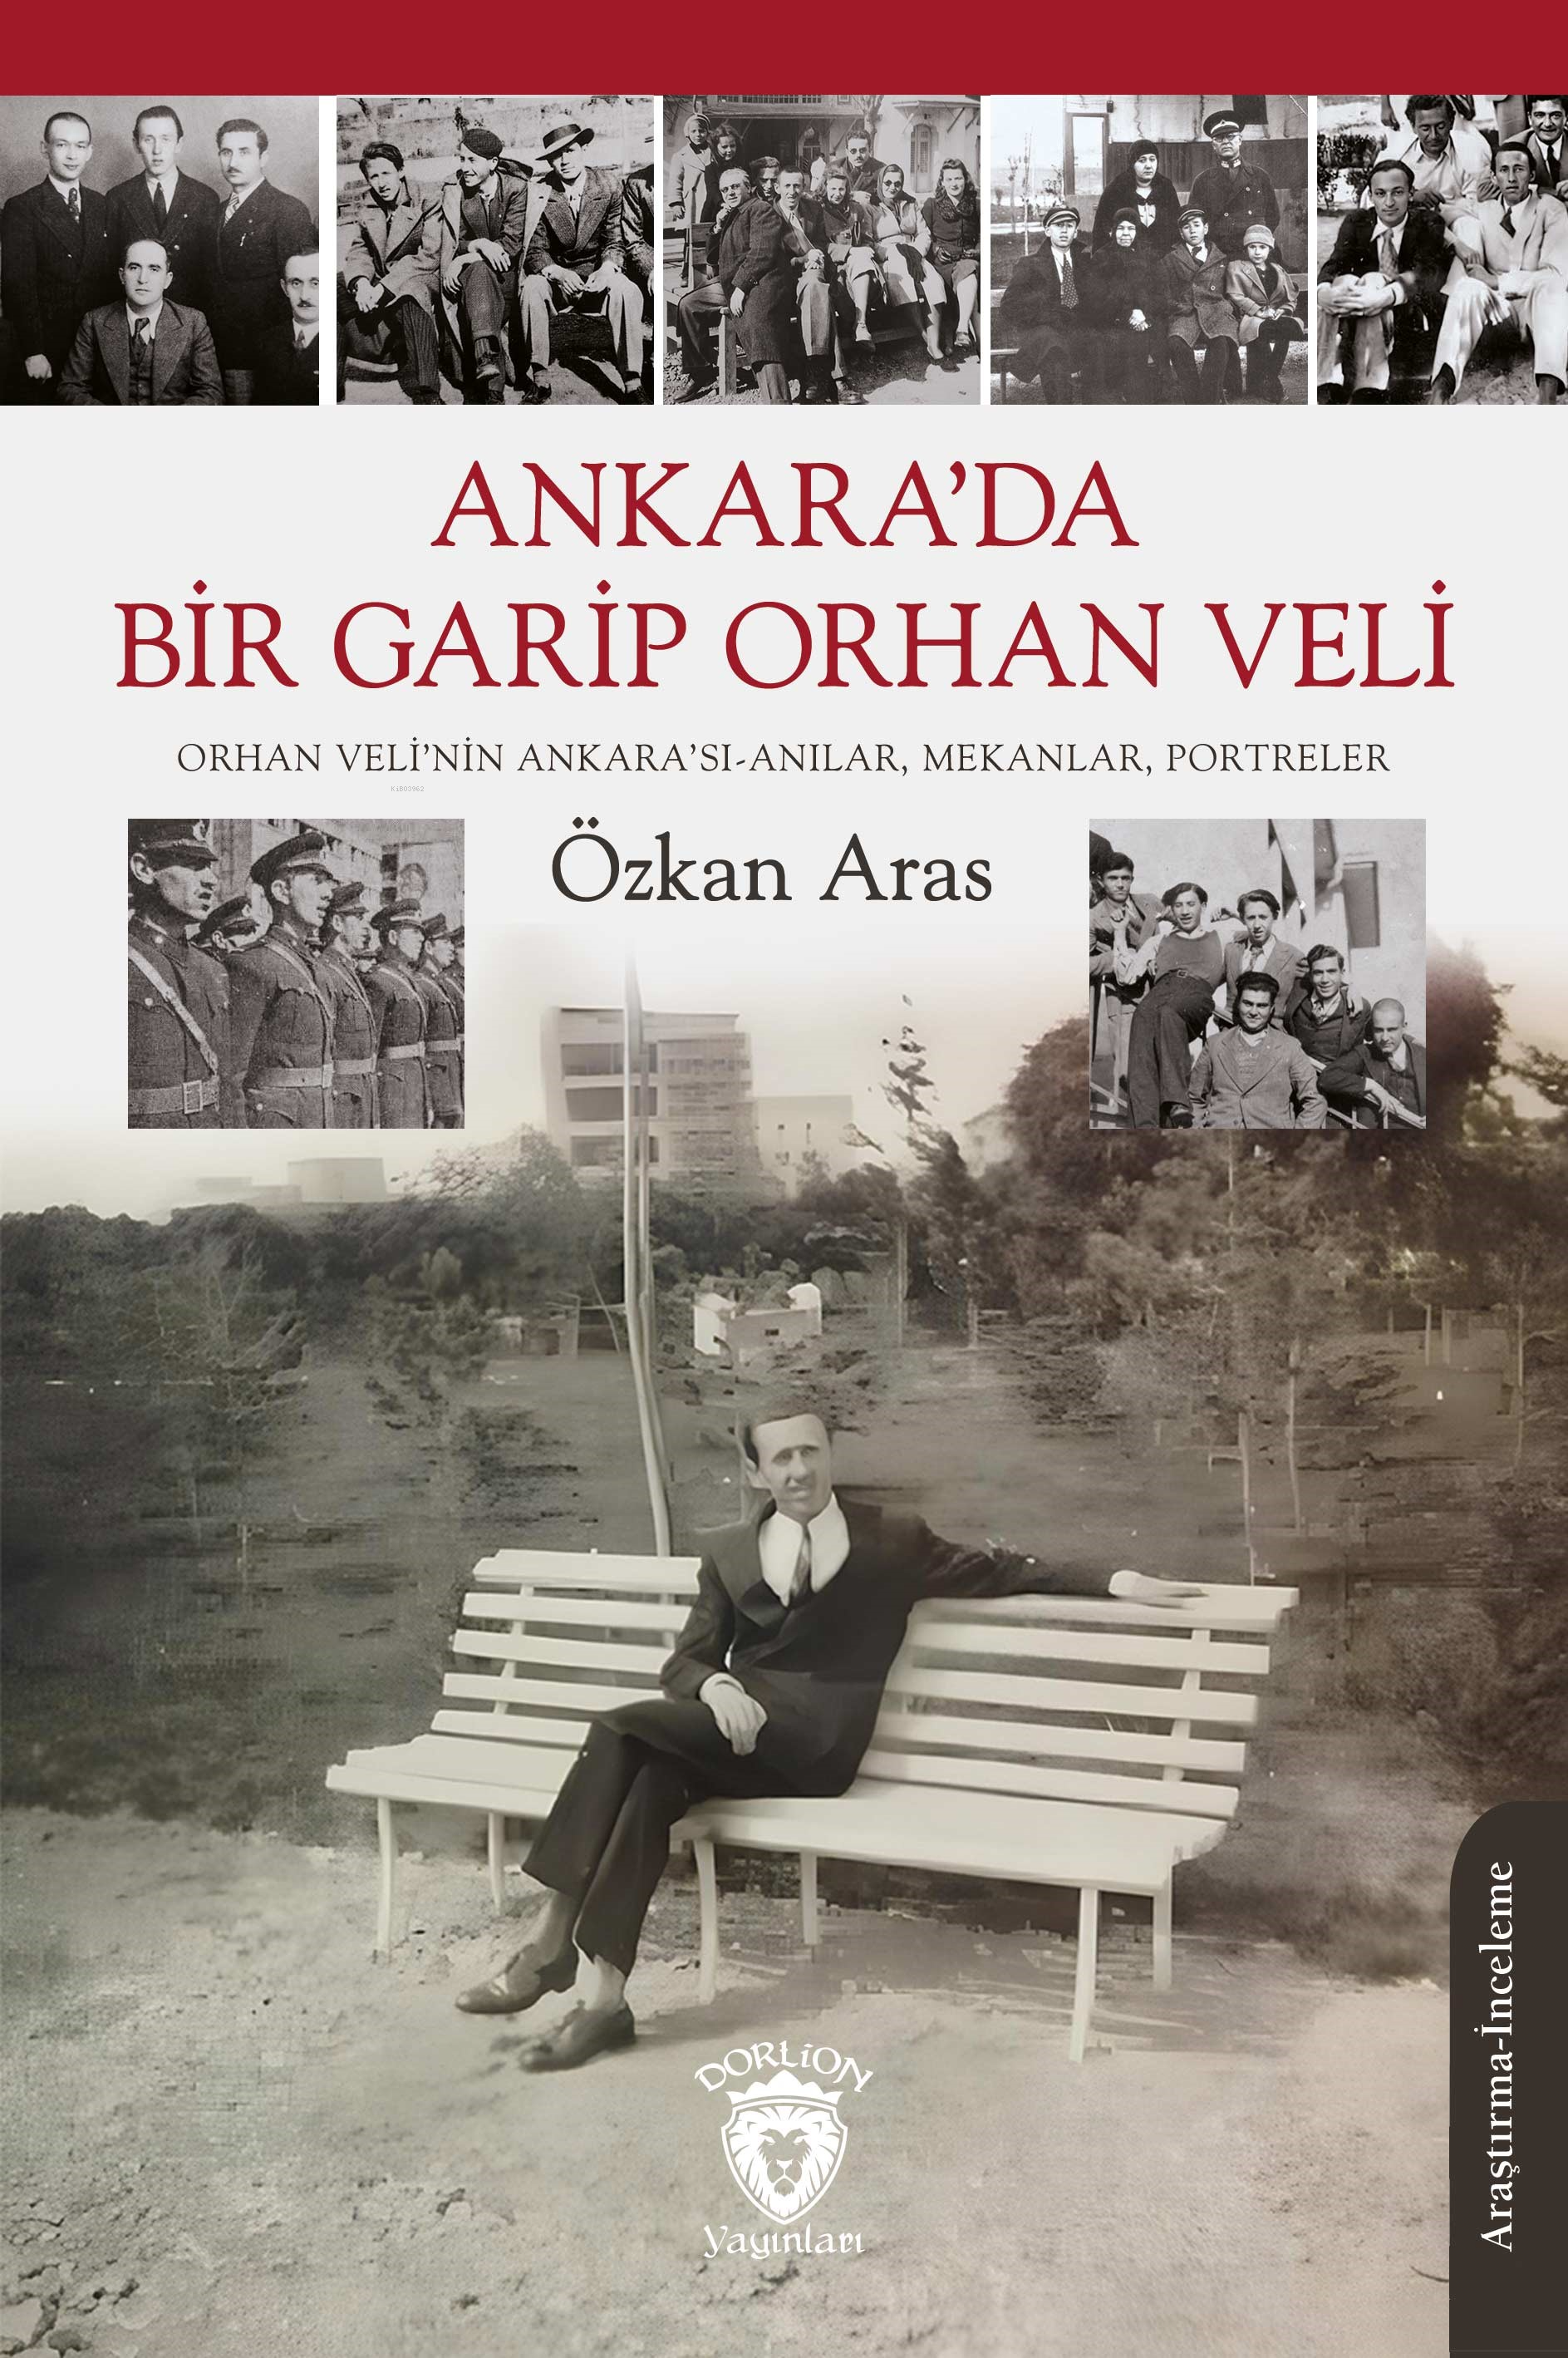 Ankara’da Bir Garip Orhan Veli;Orhan Veli’nin Ankara’sı-Anılar, Mekanlar, Portreler